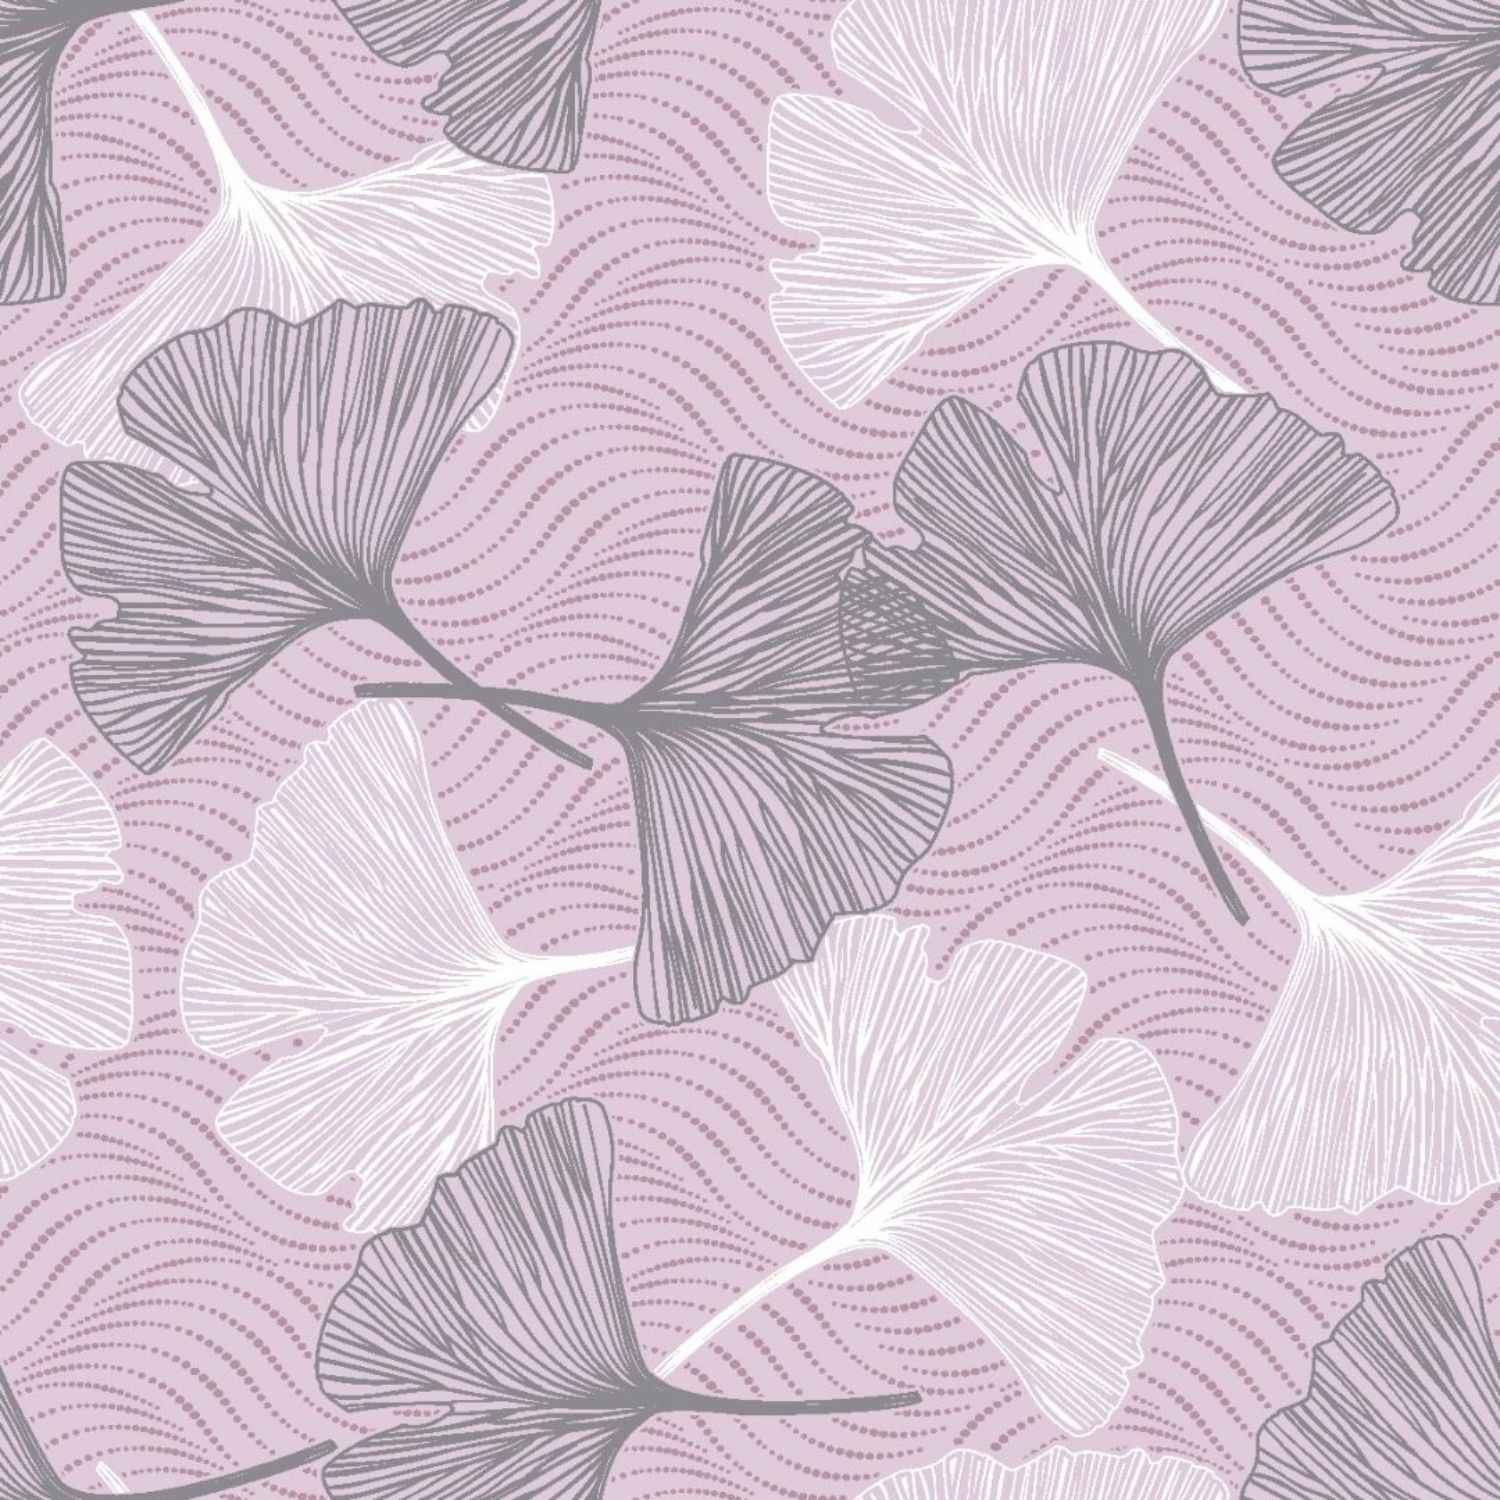 copripiumino-ginko-rosa-puro-cotone-quadrifoglio-fiorato-floreale-rosa-acceso-bianco-grgio-pattern